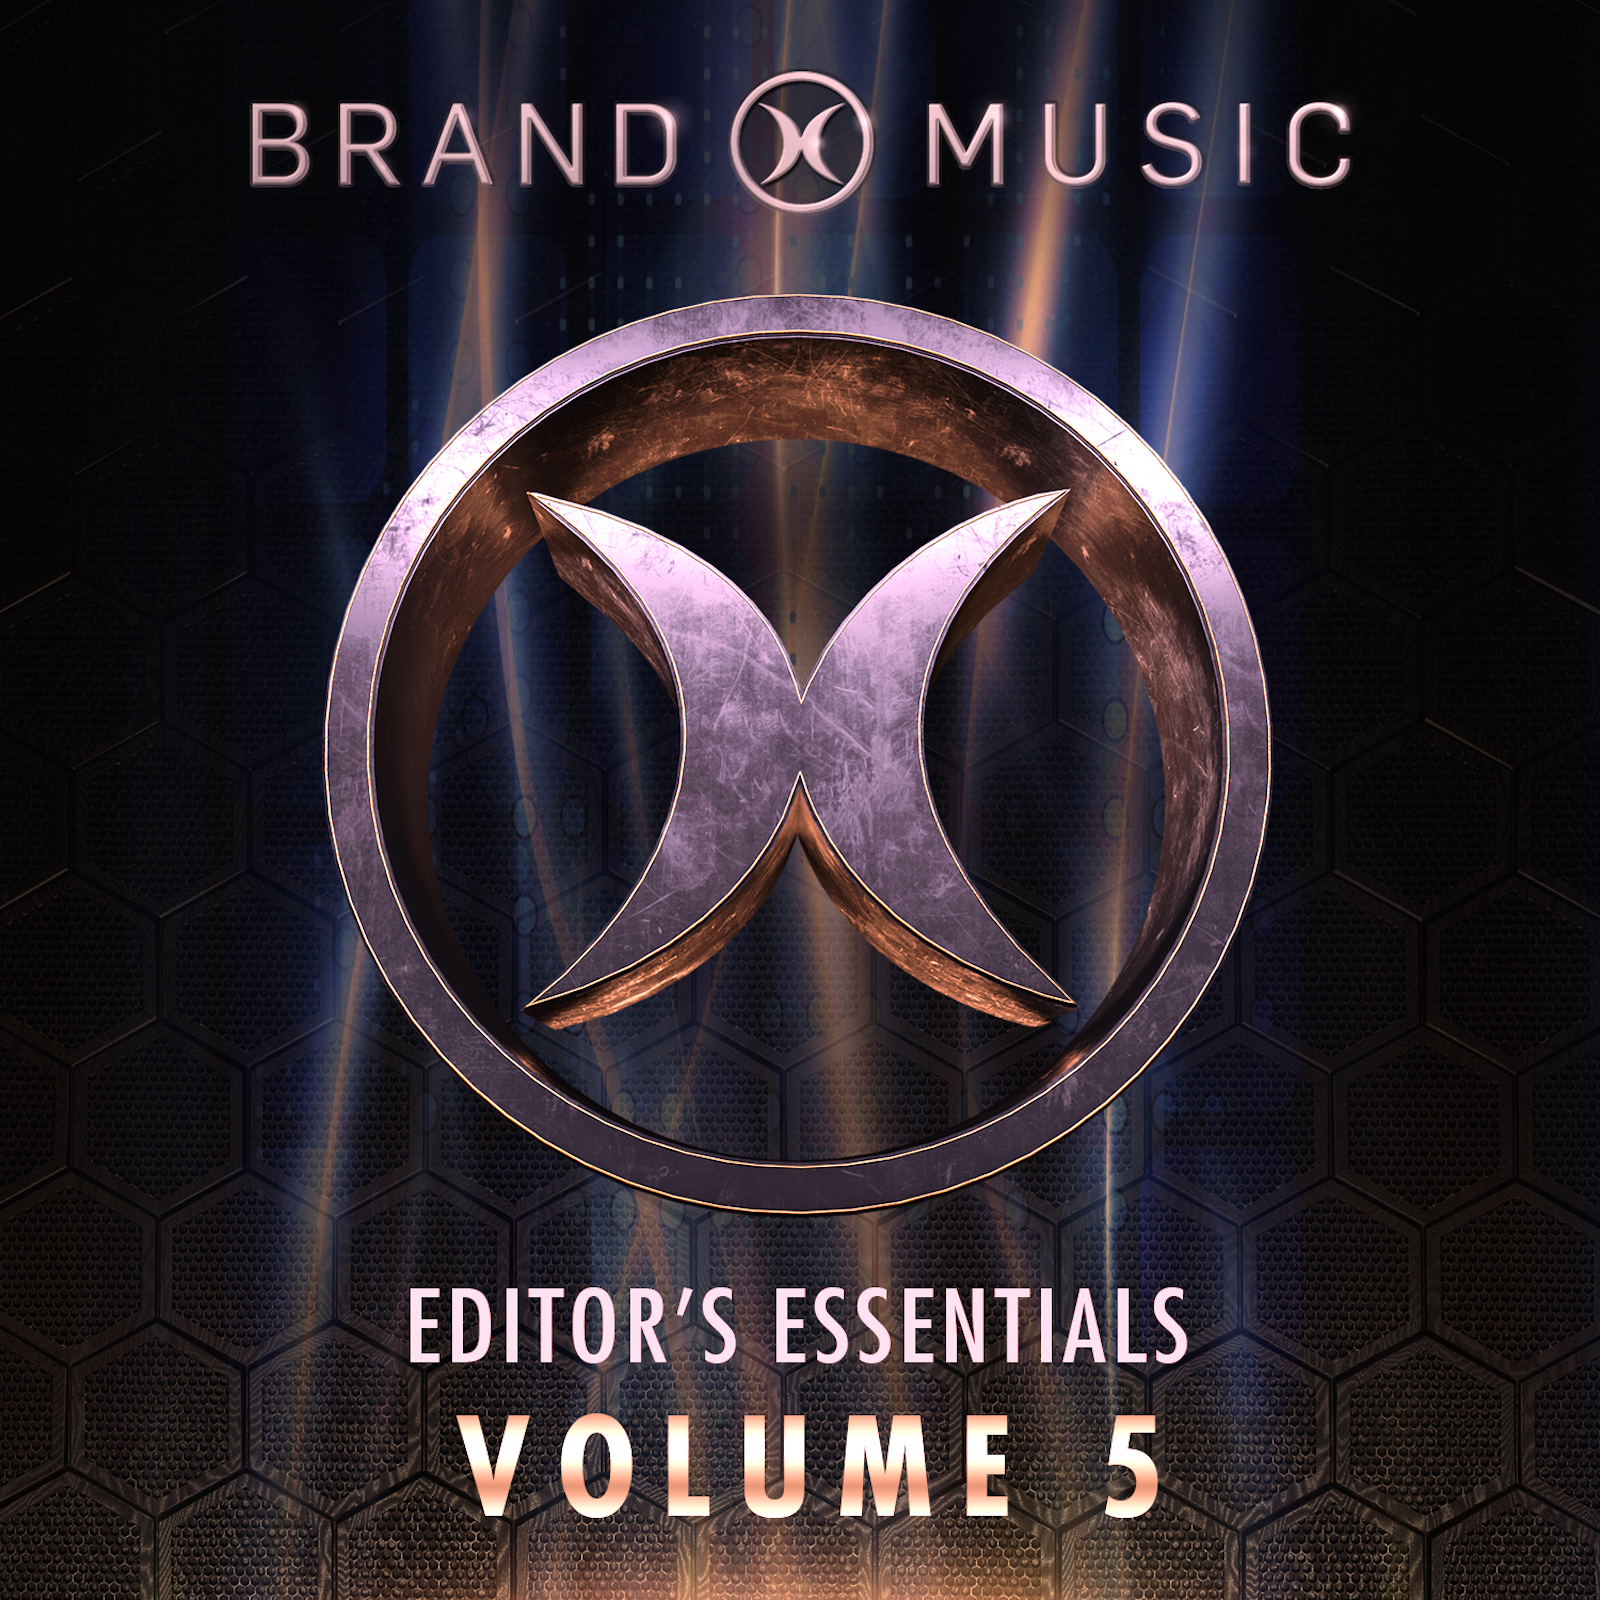 Editors Essentials Volume 5